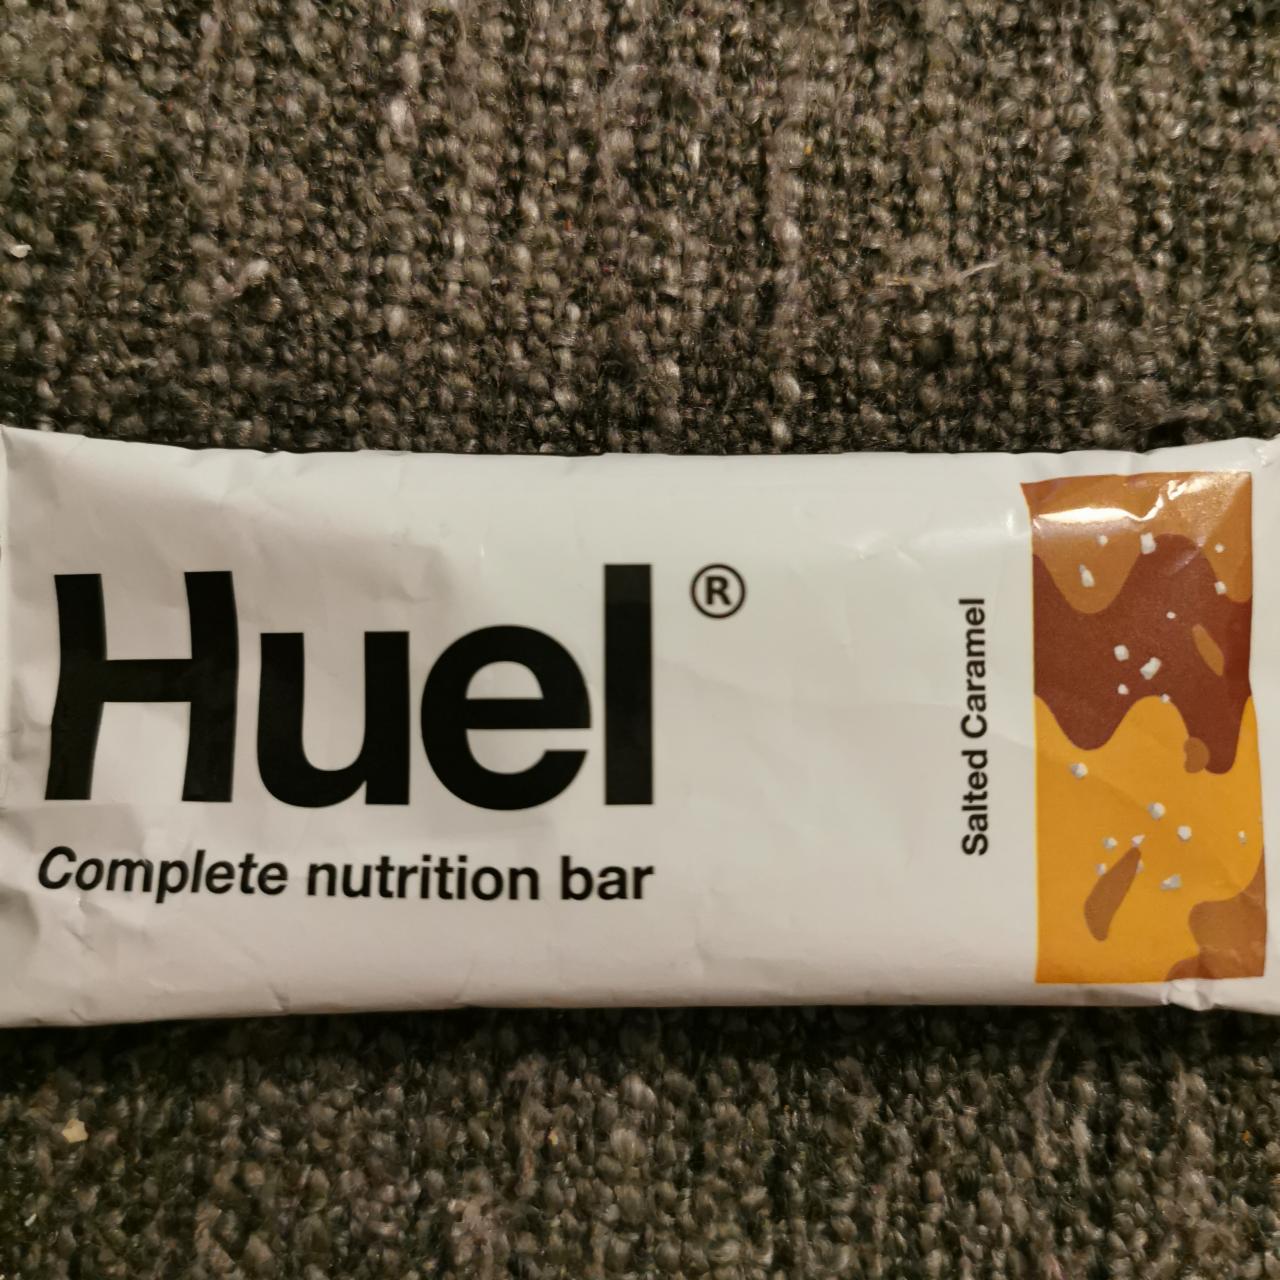 Fotografie - Huel Complete nutrition bar - Salted Caramel